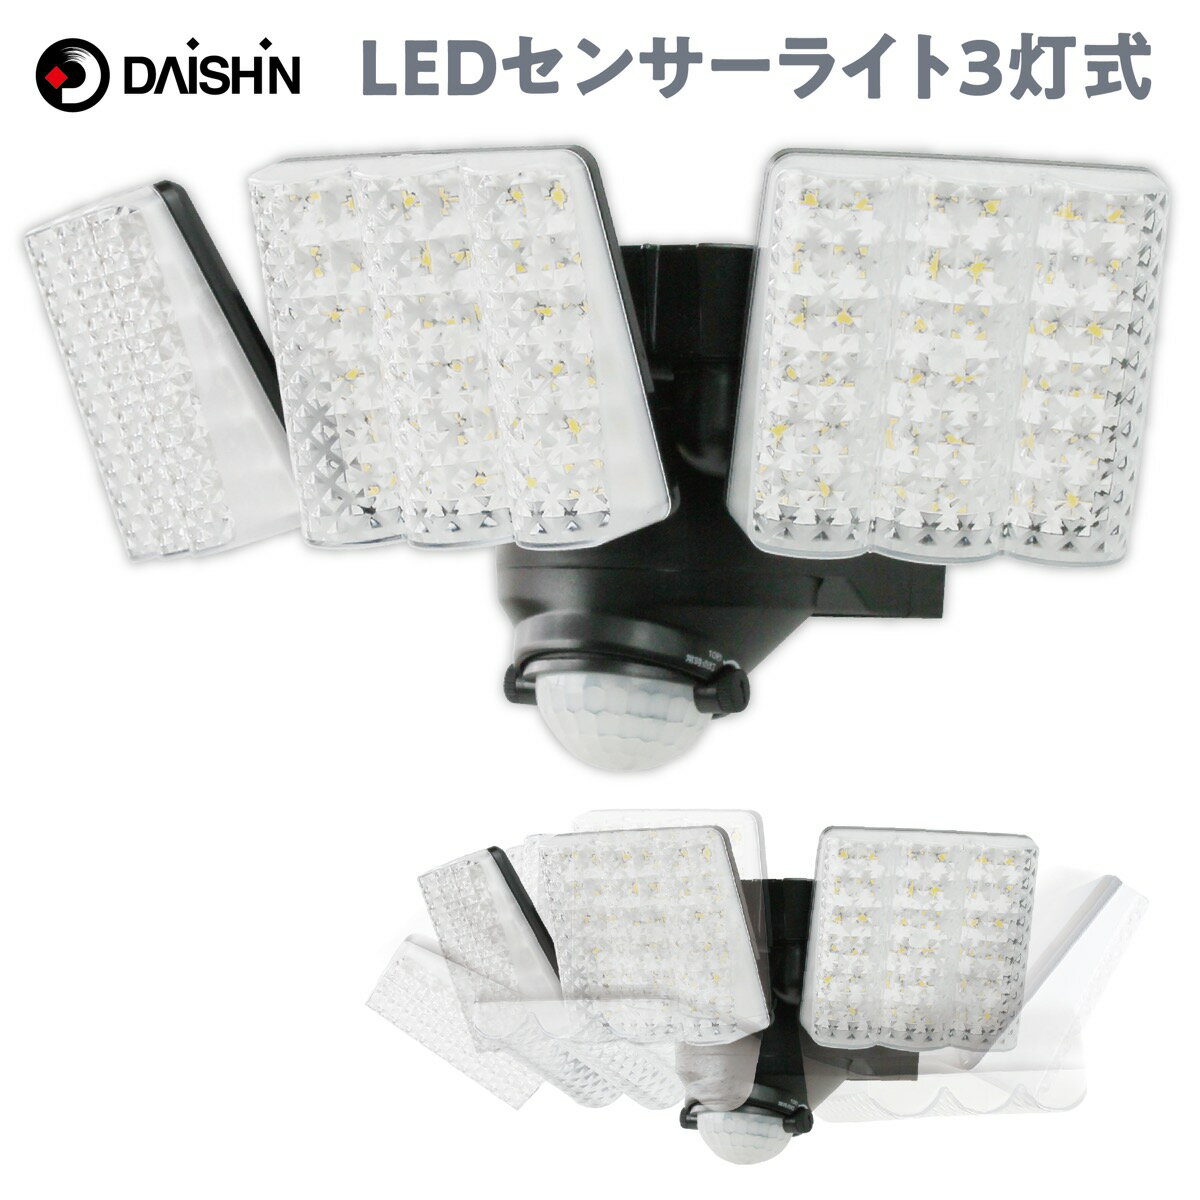 大進 DLA-7T300 AC電源 LED センサーライト 3灯式 玄関灯 防雨構造 可動式 屋外 防犯 3000ルーメン 明るい DAISHIN ダイシン (06) その1